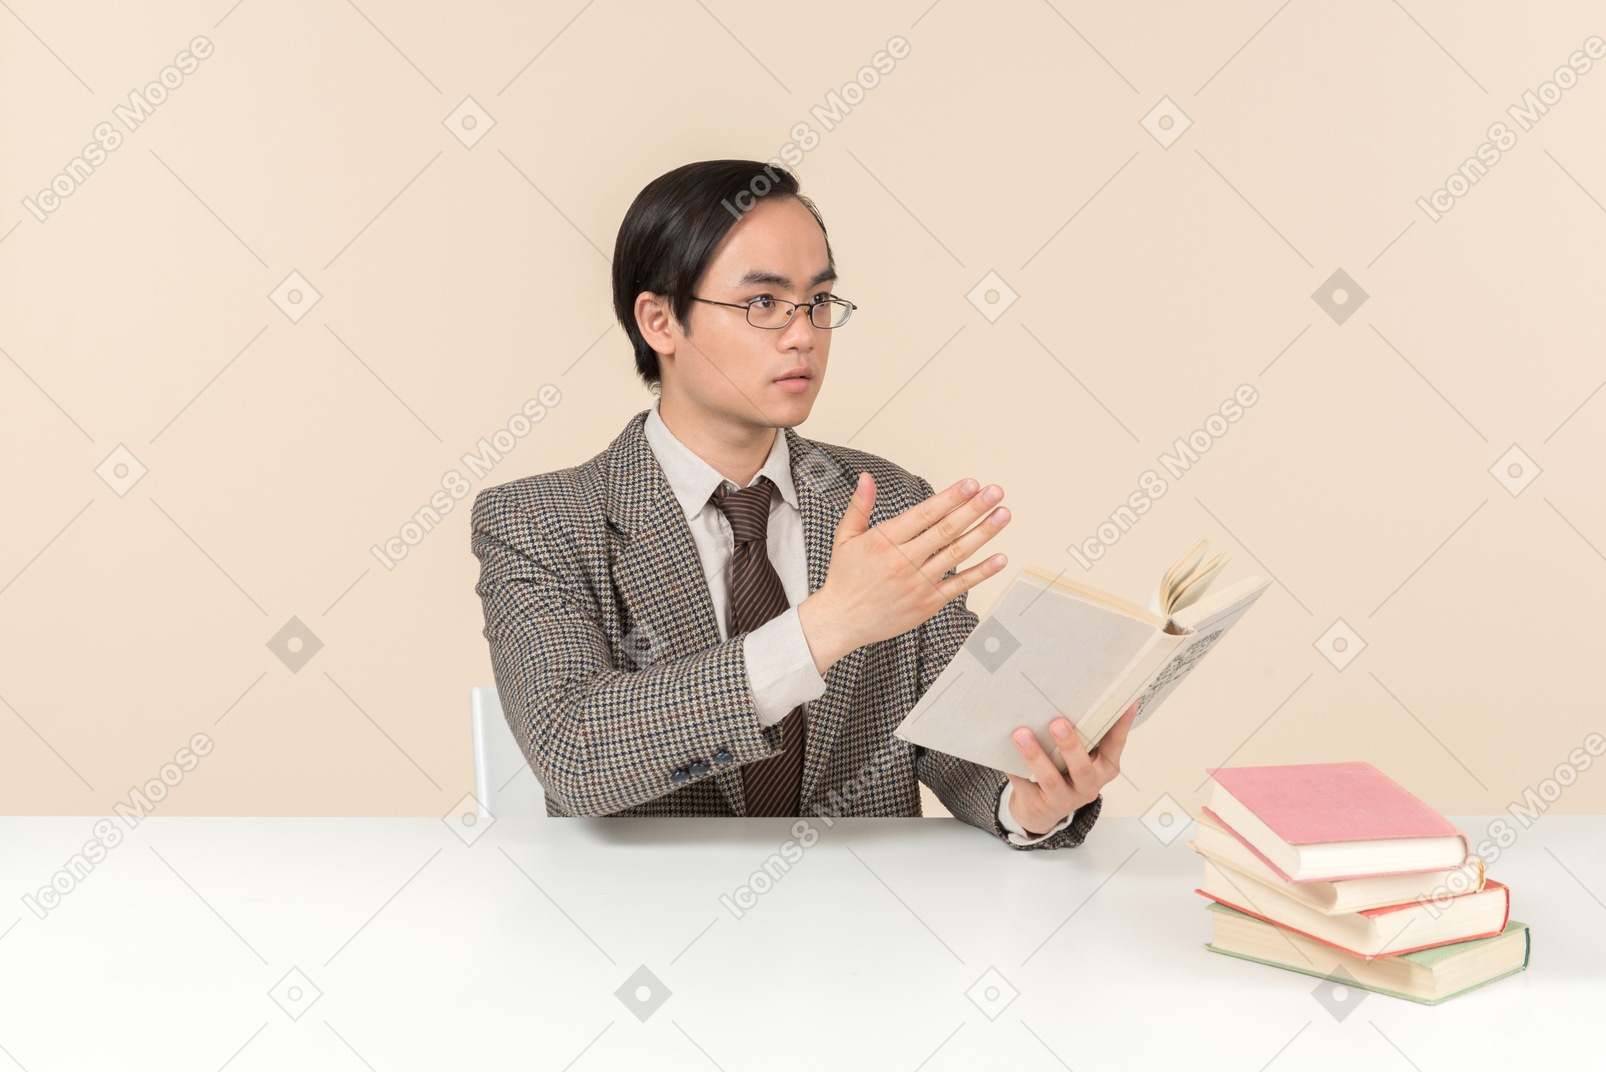 Un profesor asiático con traje a cuadros, corbata y un libro en la mano, trabajando con la clase.